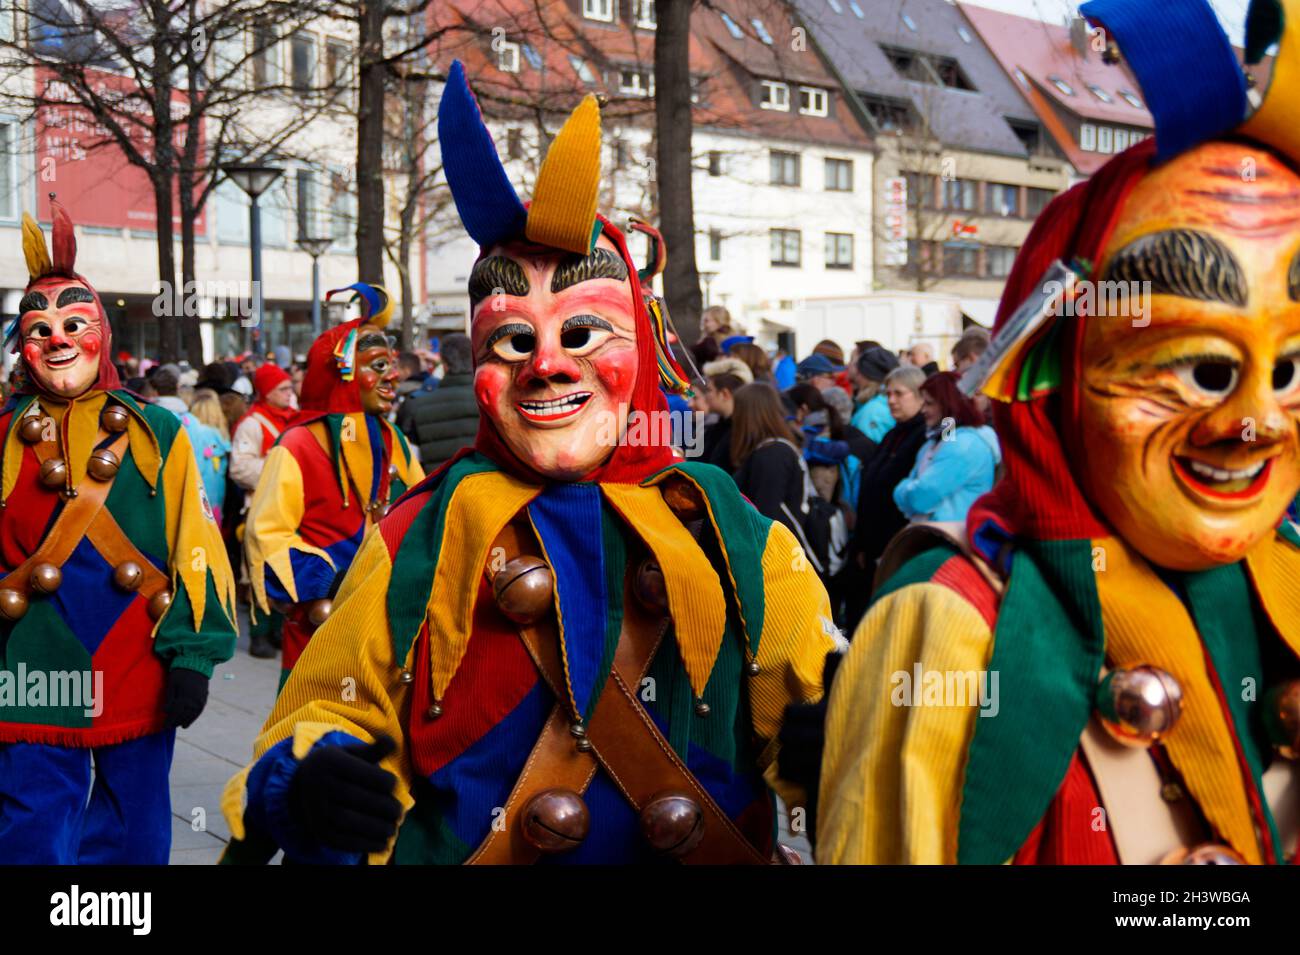 Persone vestite in abiti divertenti e maschere che celebrano il tradizionale carnevale tedesco Shrovetide chiamato Fasching o Narrensprung a Ulm, Germania Foto Stock